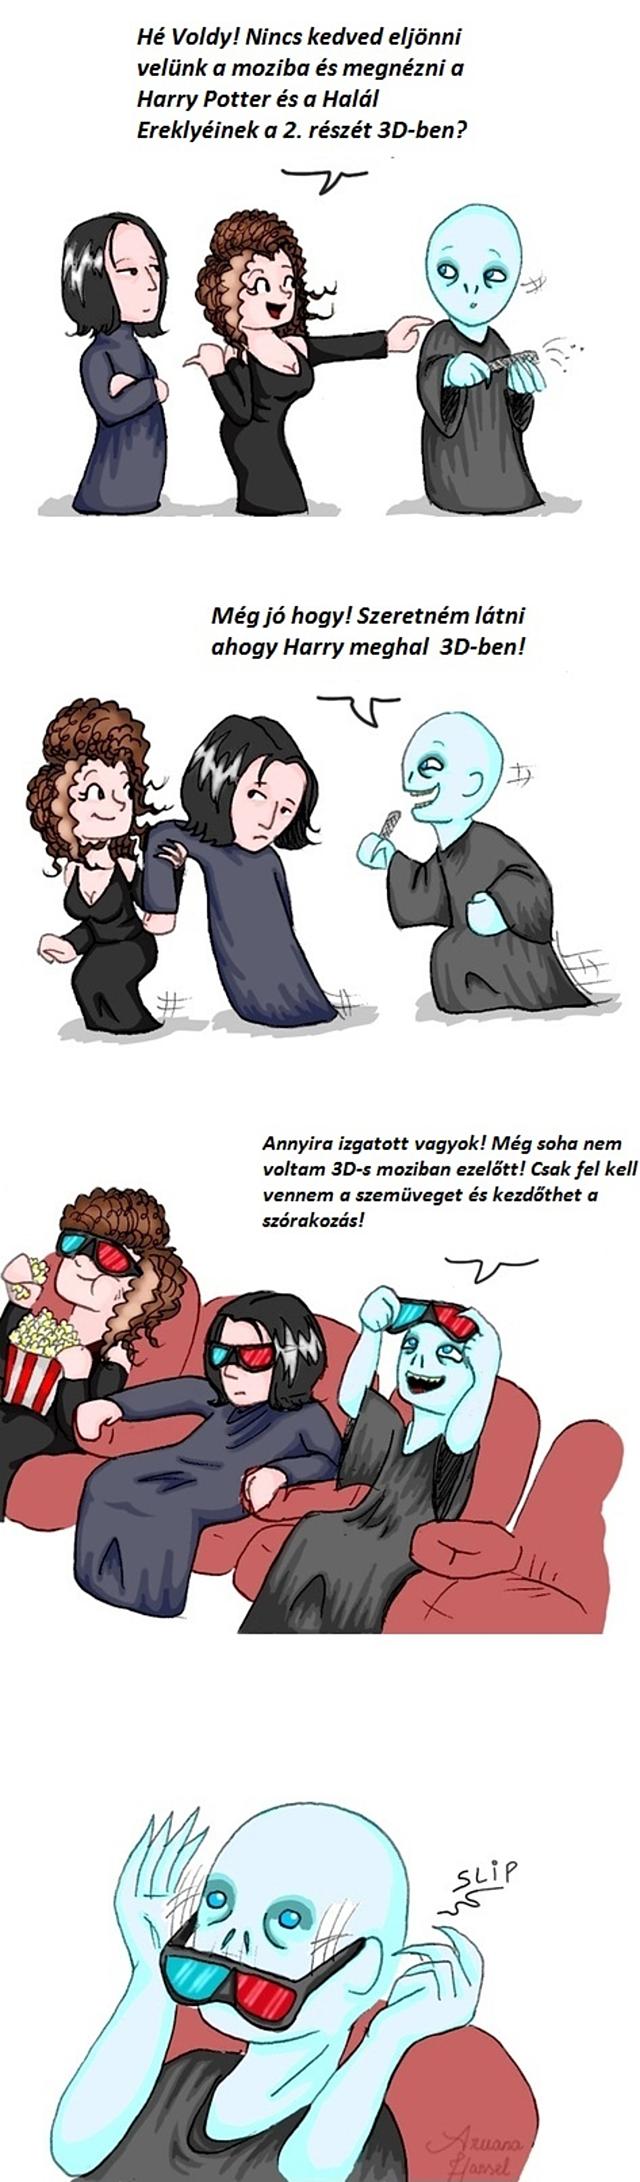 Ezért nem jár Voldemort 3D-s moziba... :) beteg vicces voldemort Képek